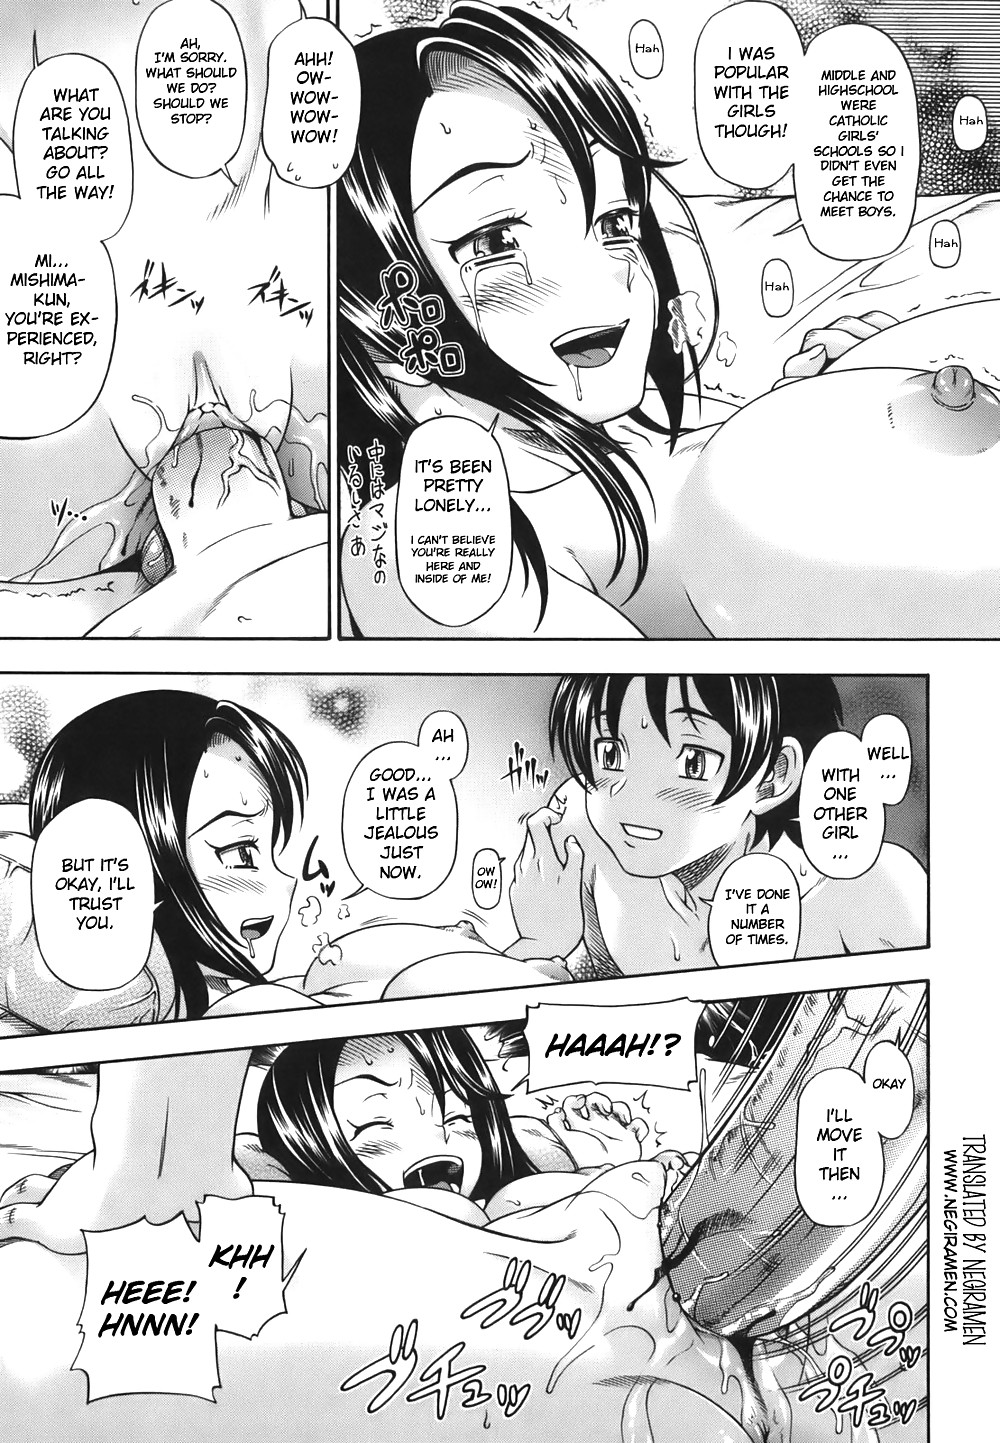 (fumetto hentai) fukudada opere erotiche #1
 #21011513